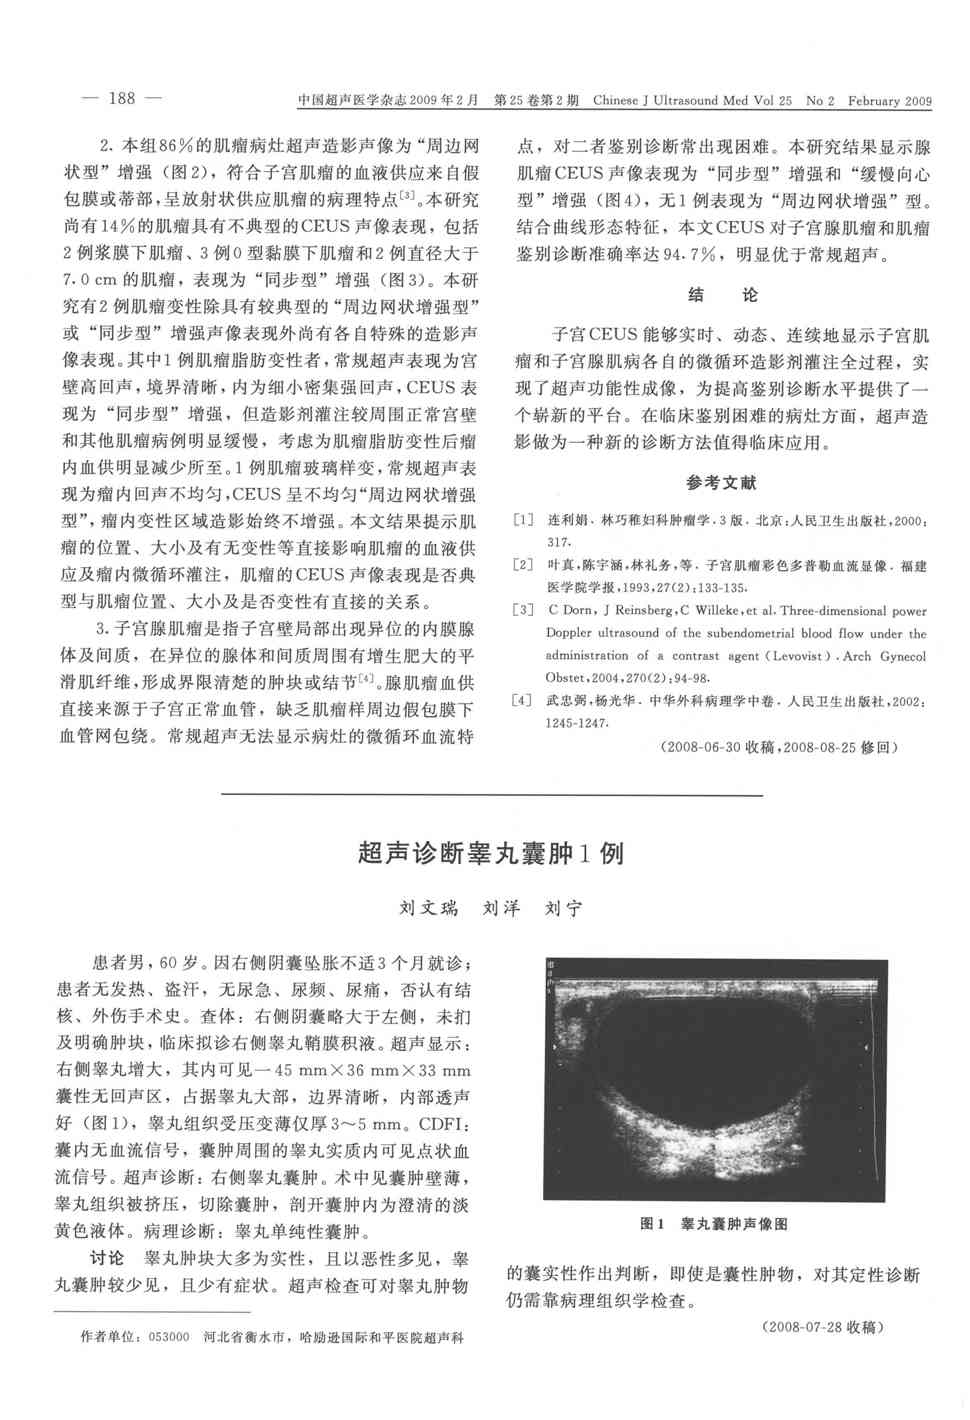 期刊超声诊断睾丸囊肿1例     患者男,60岁.